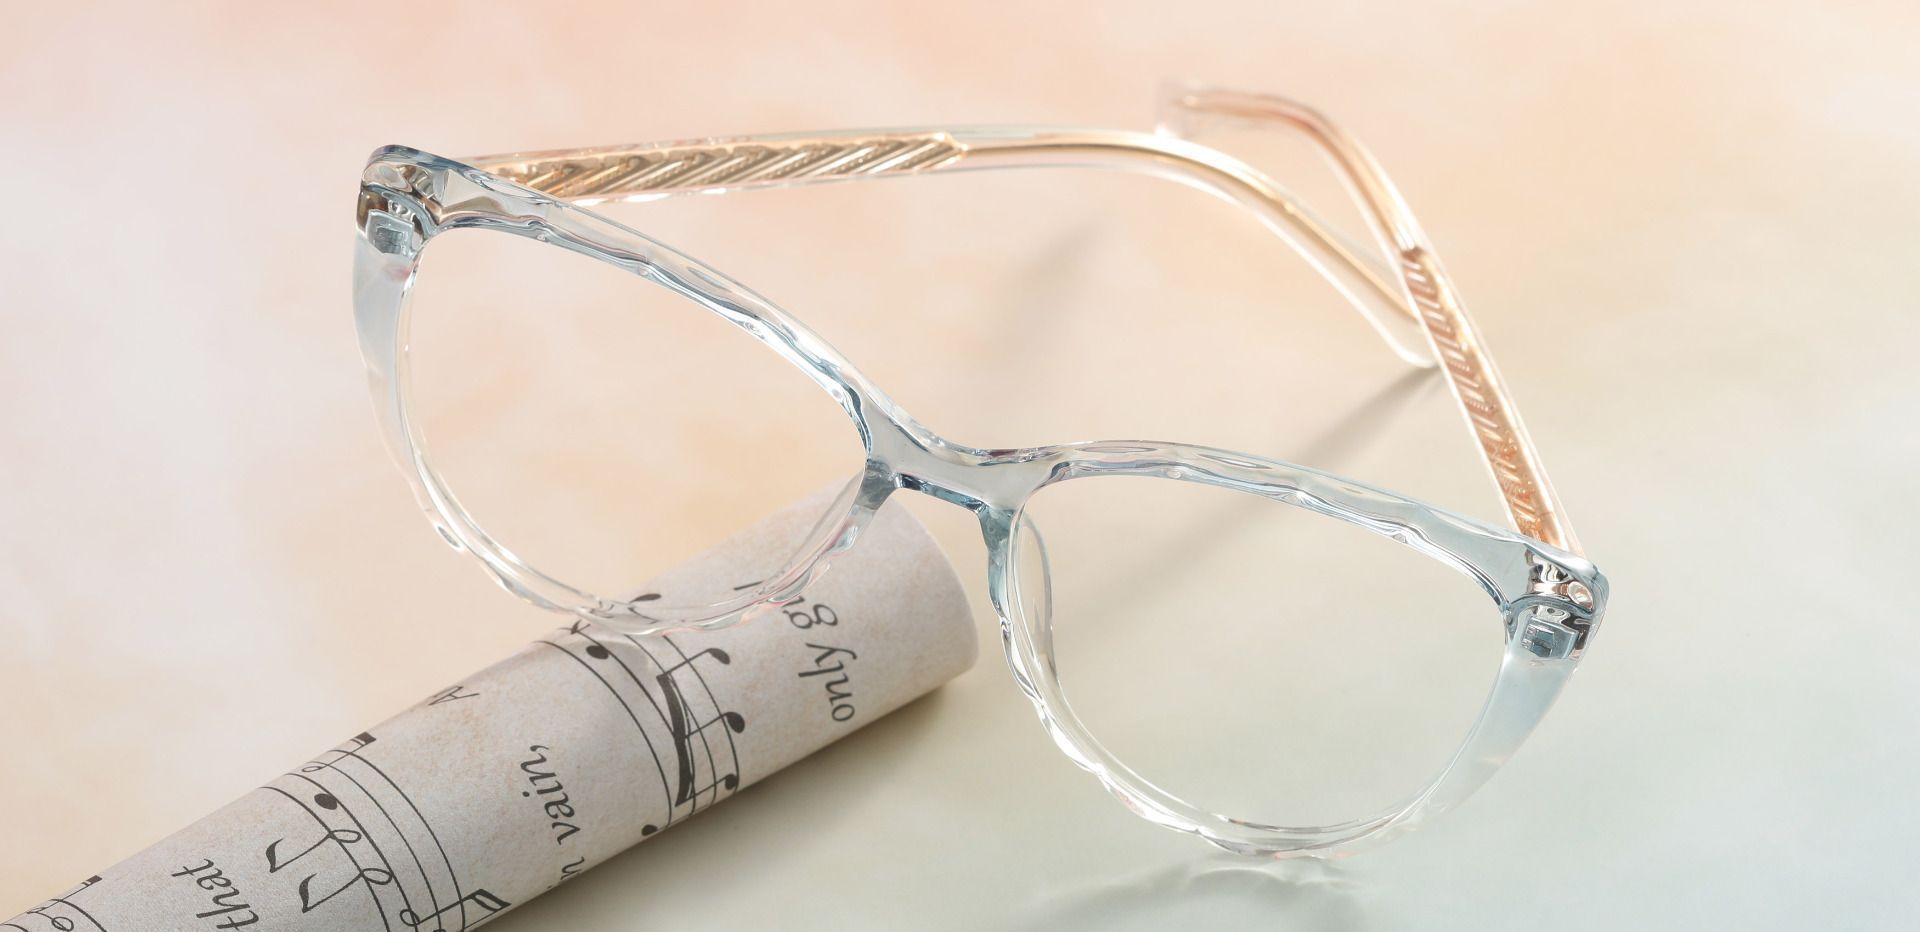 Fontaine Cat Eye Prescription Glasses - Blue | Women's Eyeglasses ...